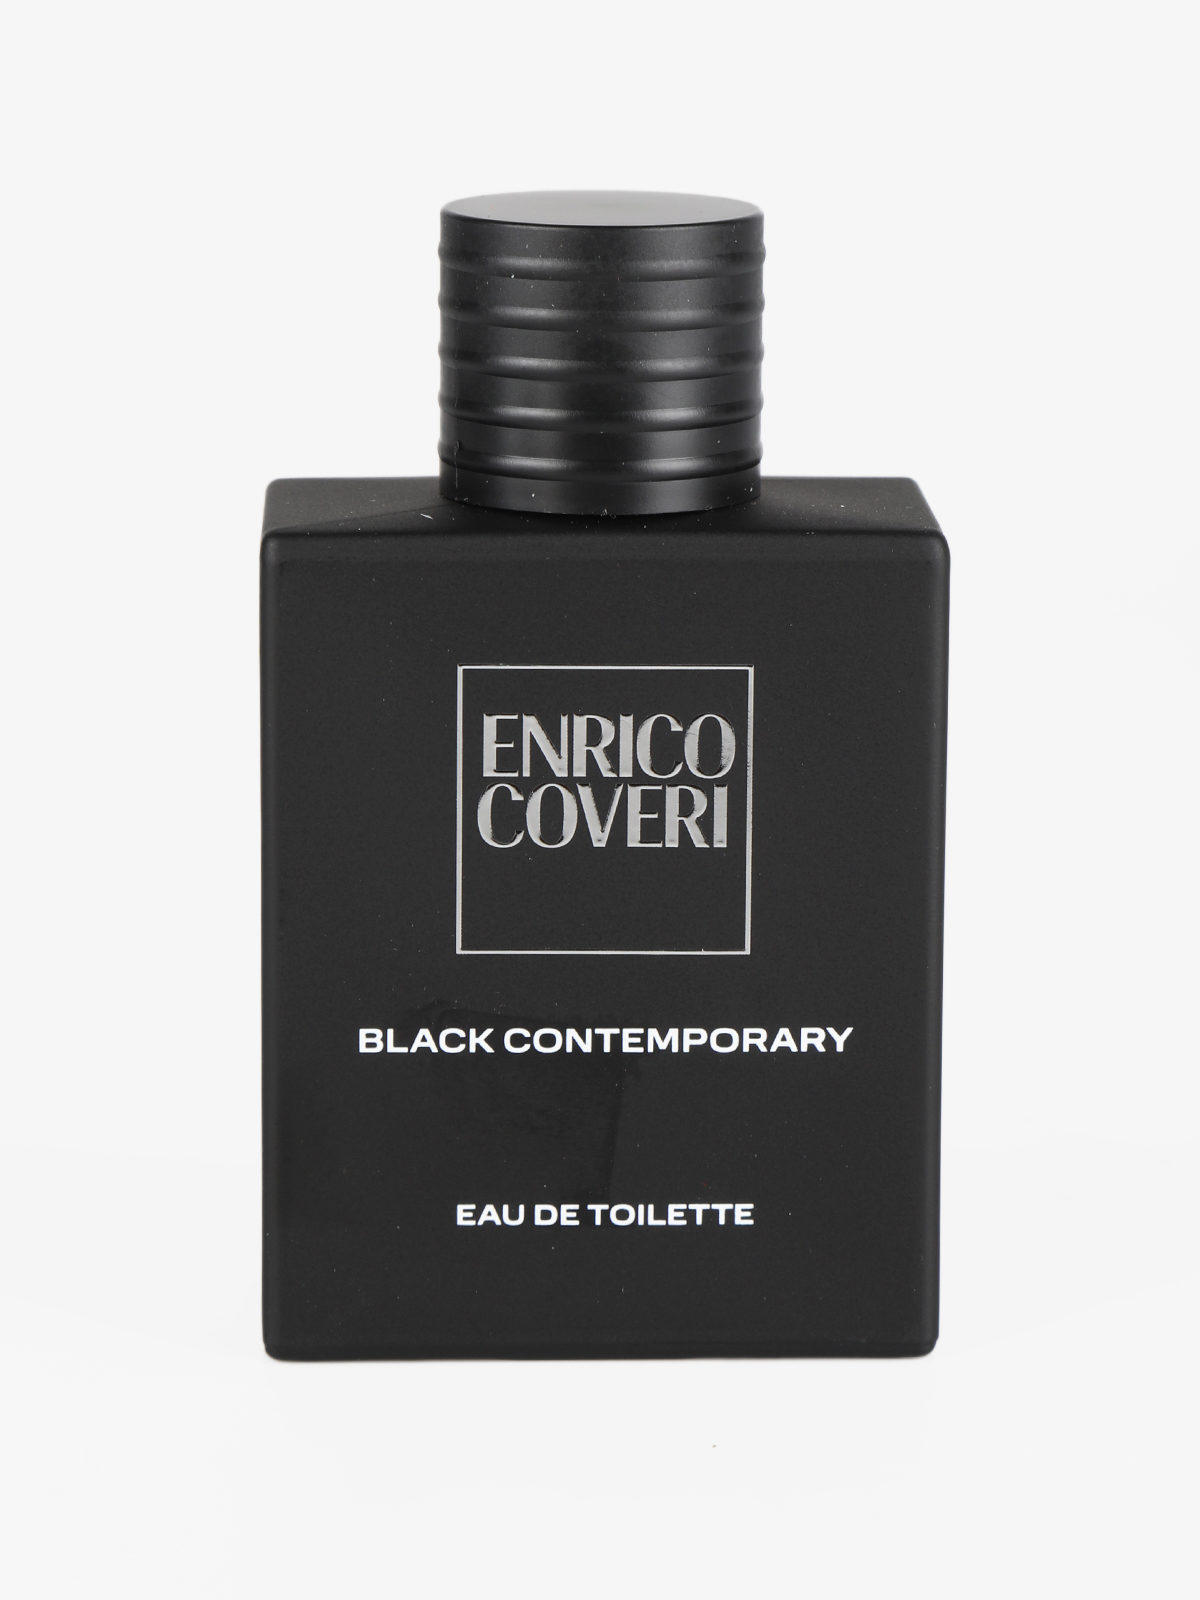 Enrico Coveri Black Contemporary Eau de Toilette Pour Homme 100 ml Tester | RossoLacca